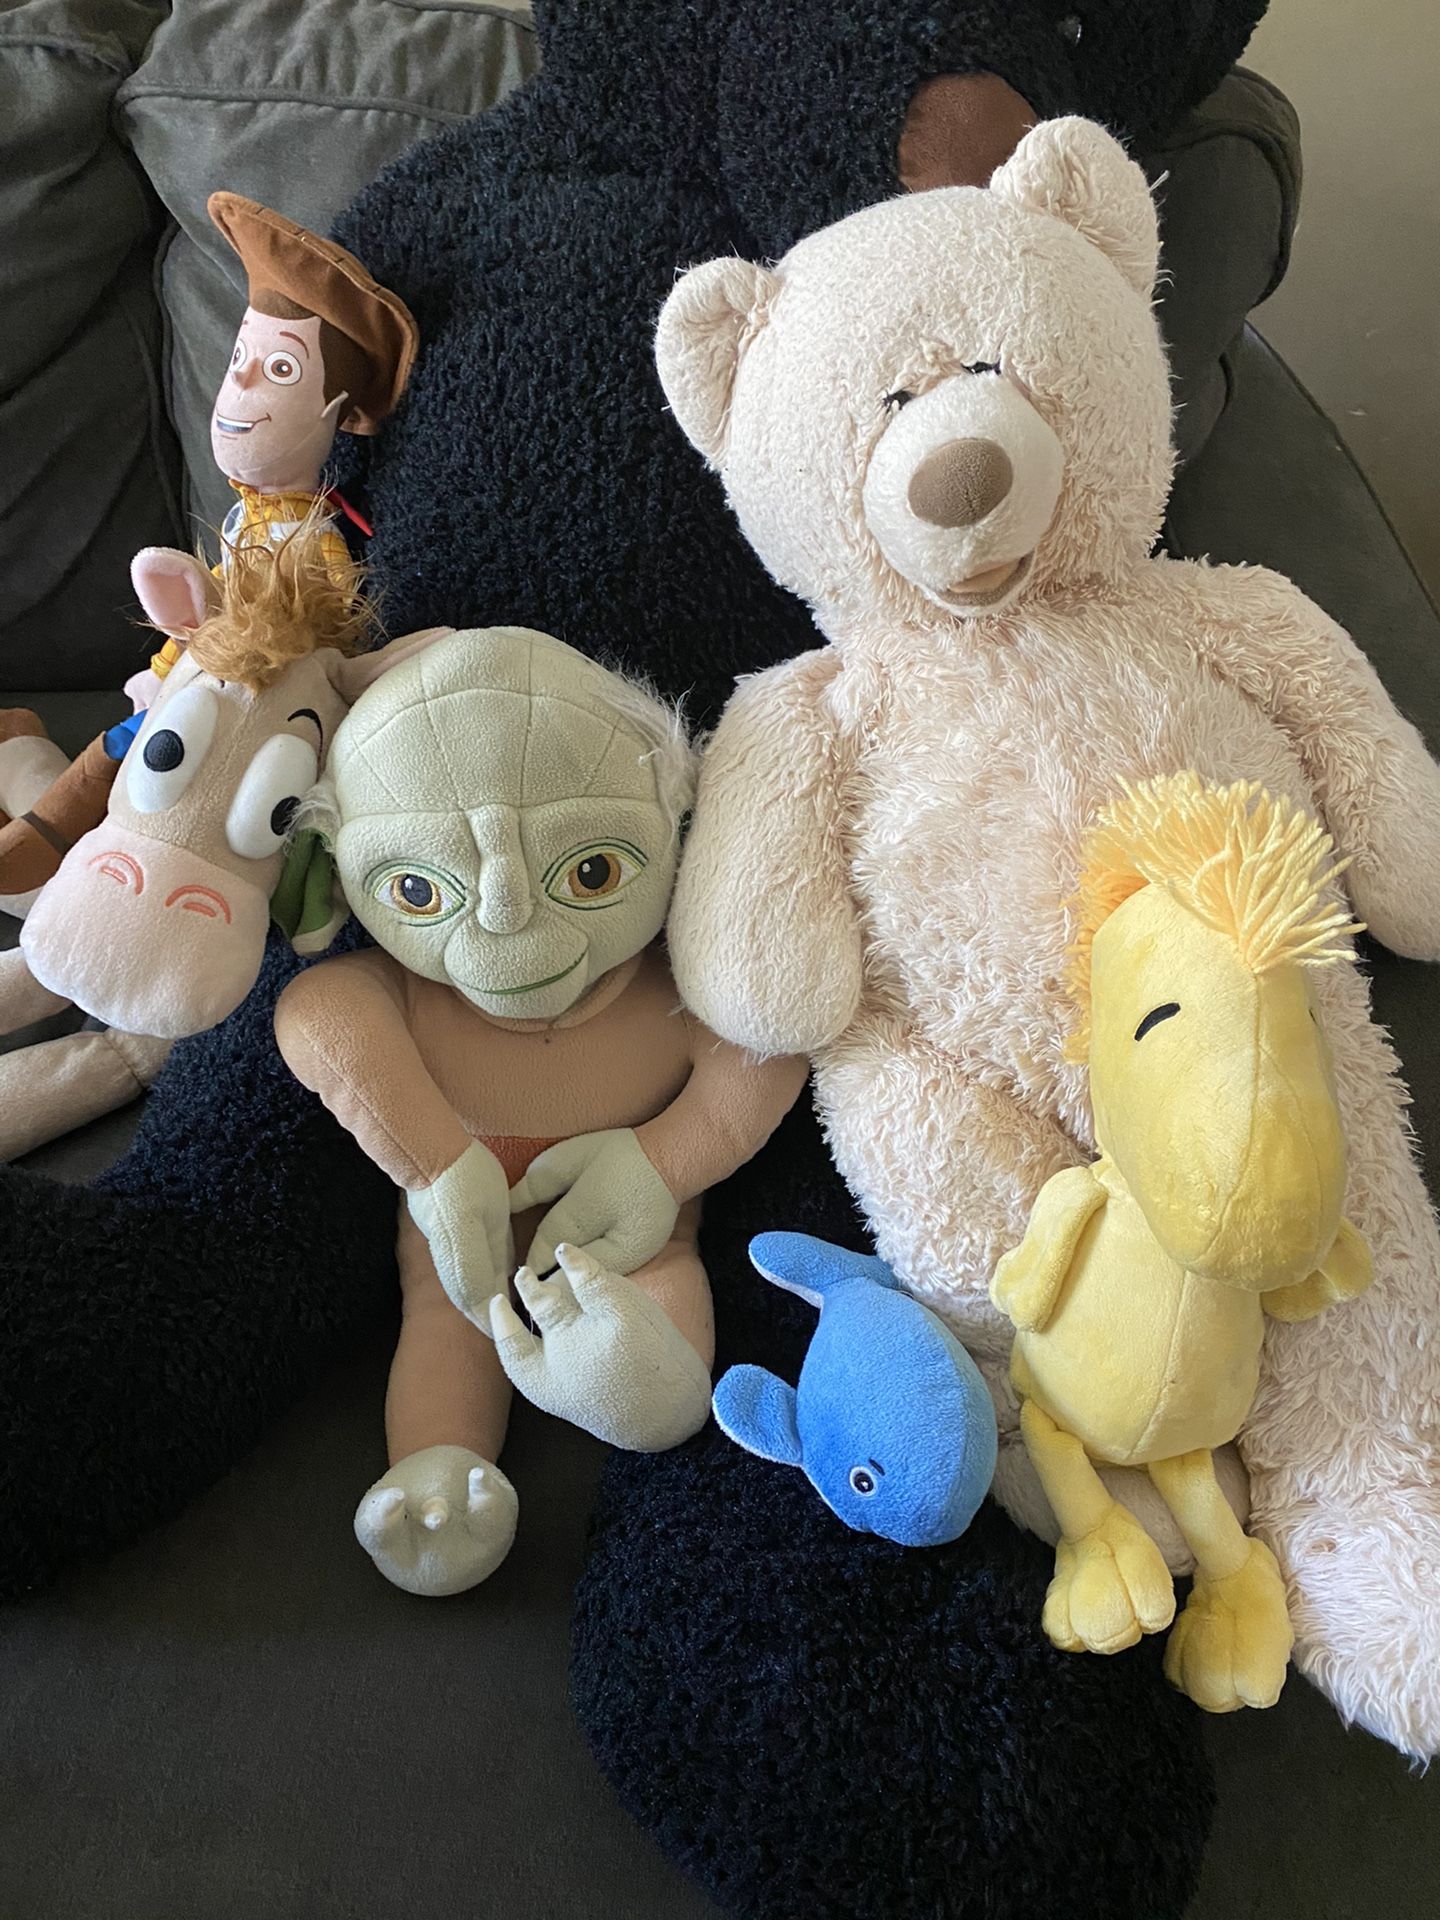 Stuffed animals: toy story woody and bullseye, yoda, peanuts